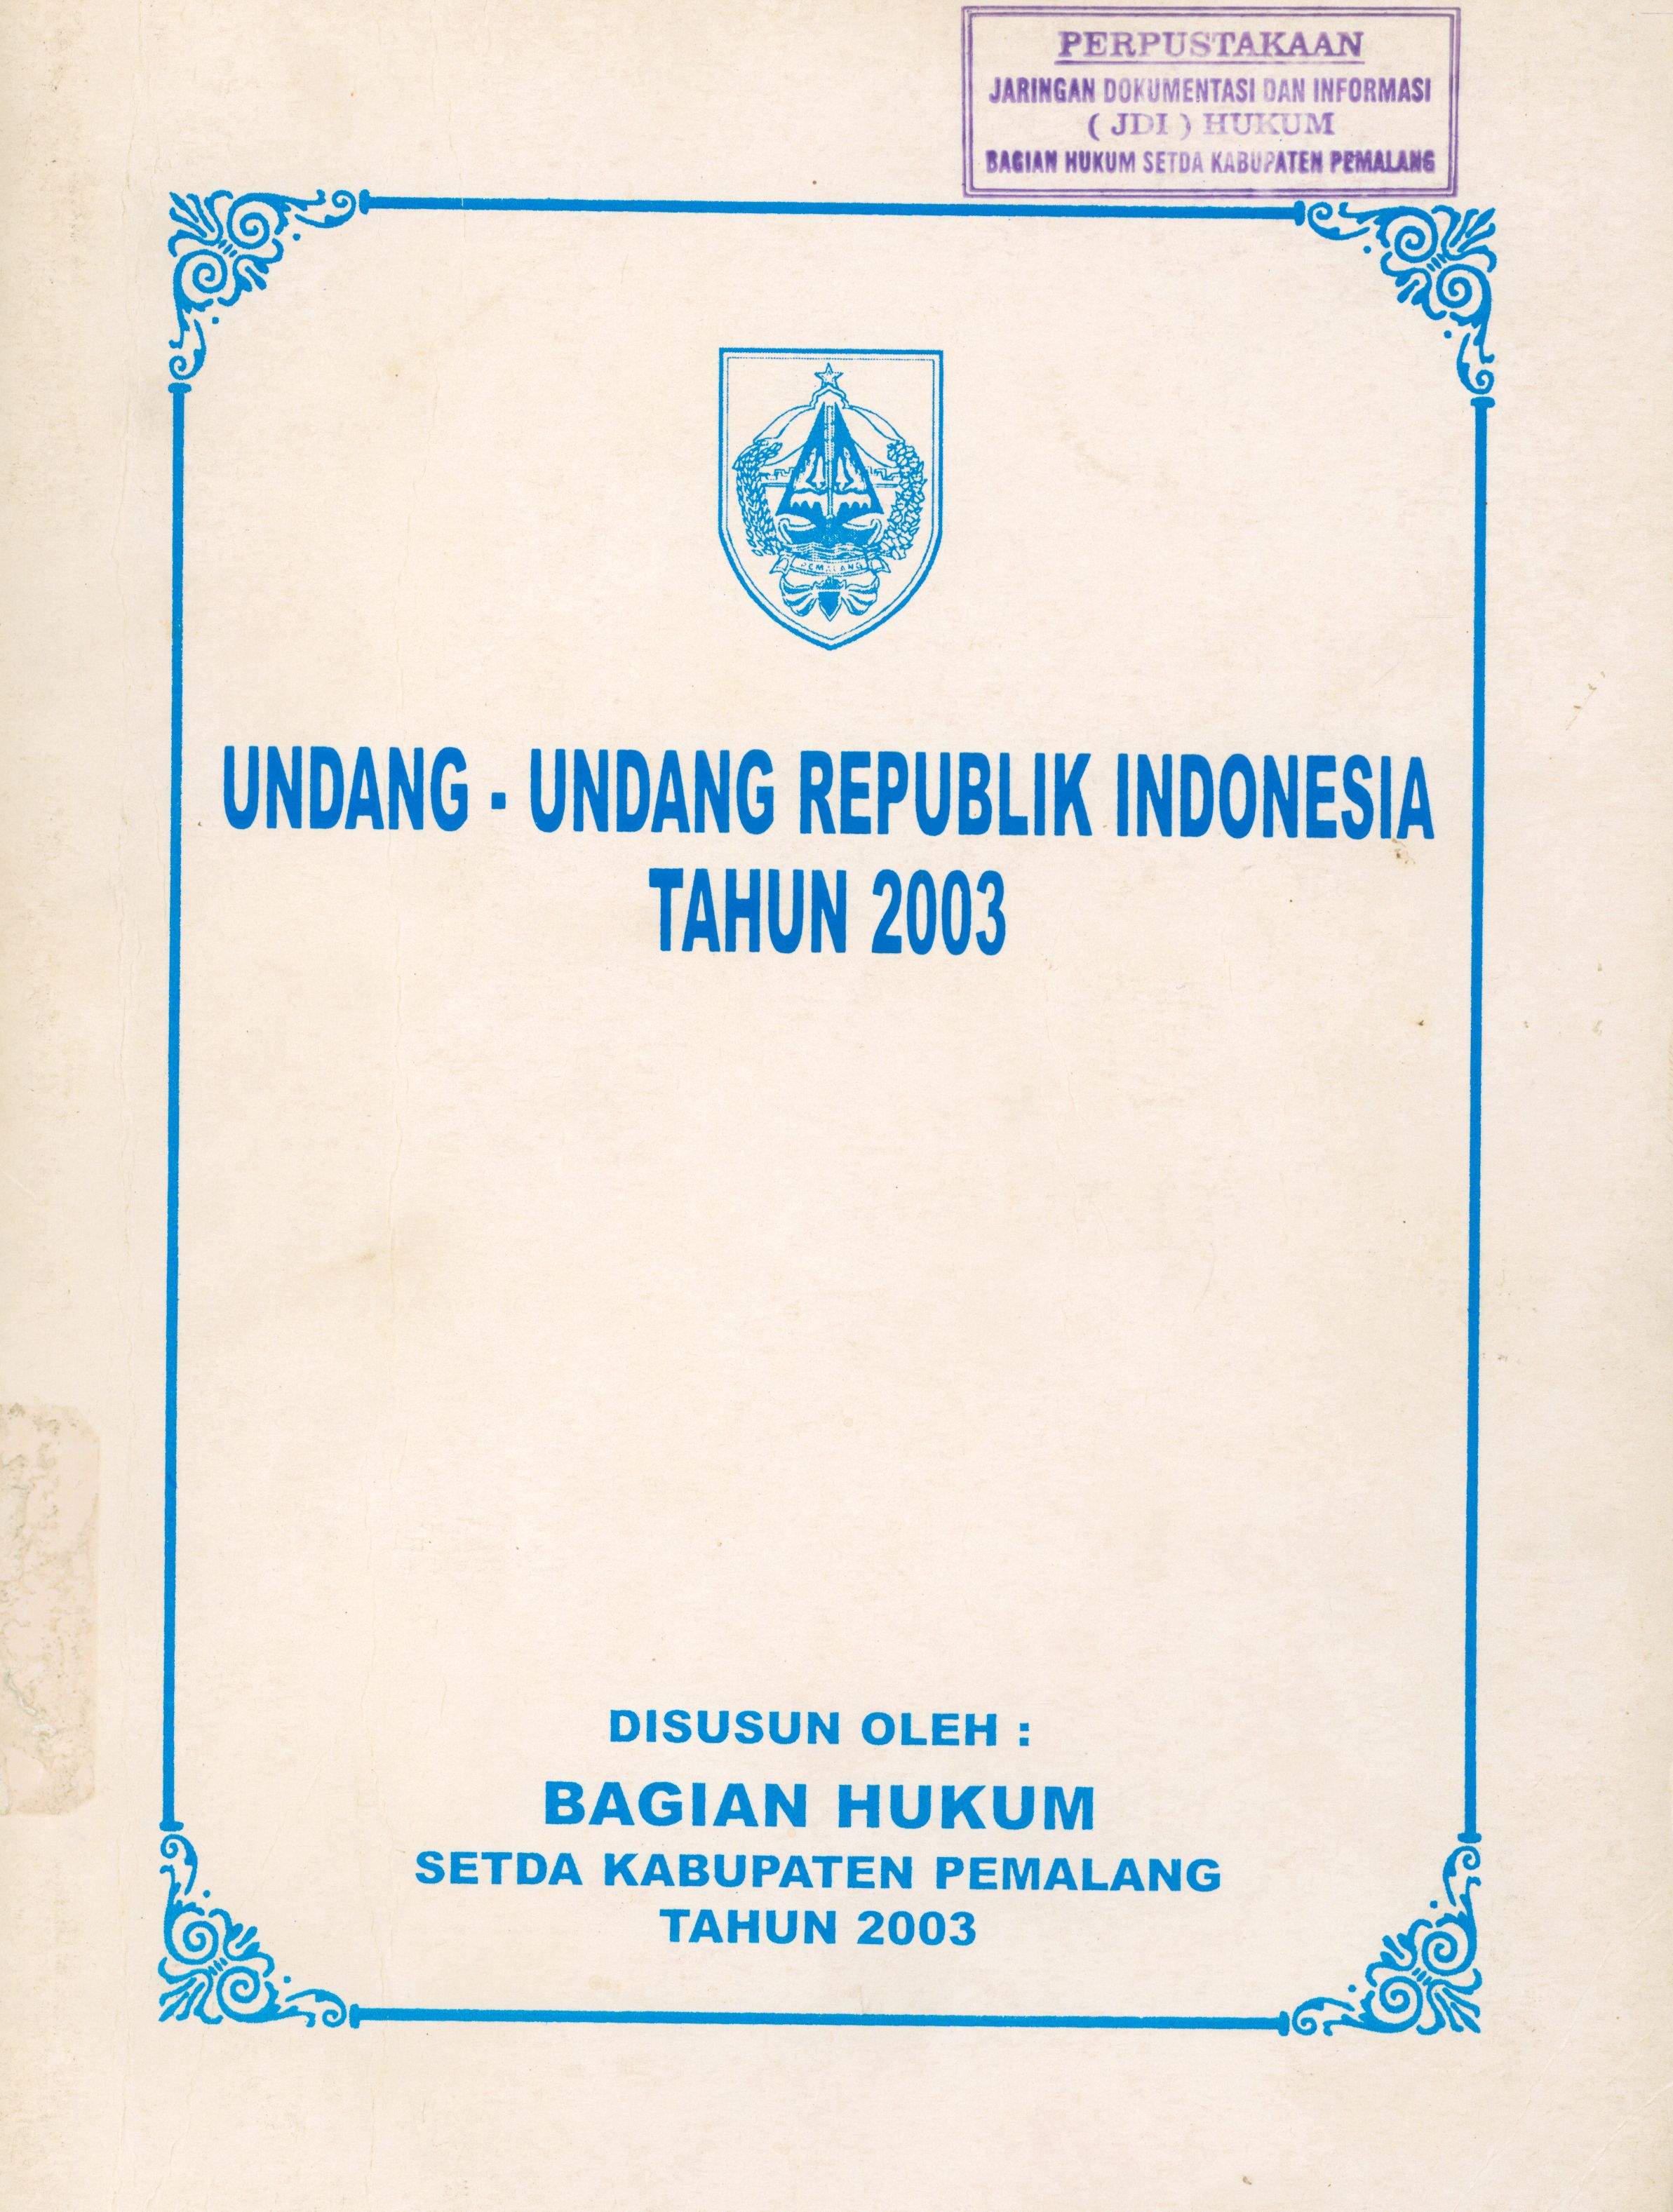 Undang-Undang Republik Indonesia Tahun 2003